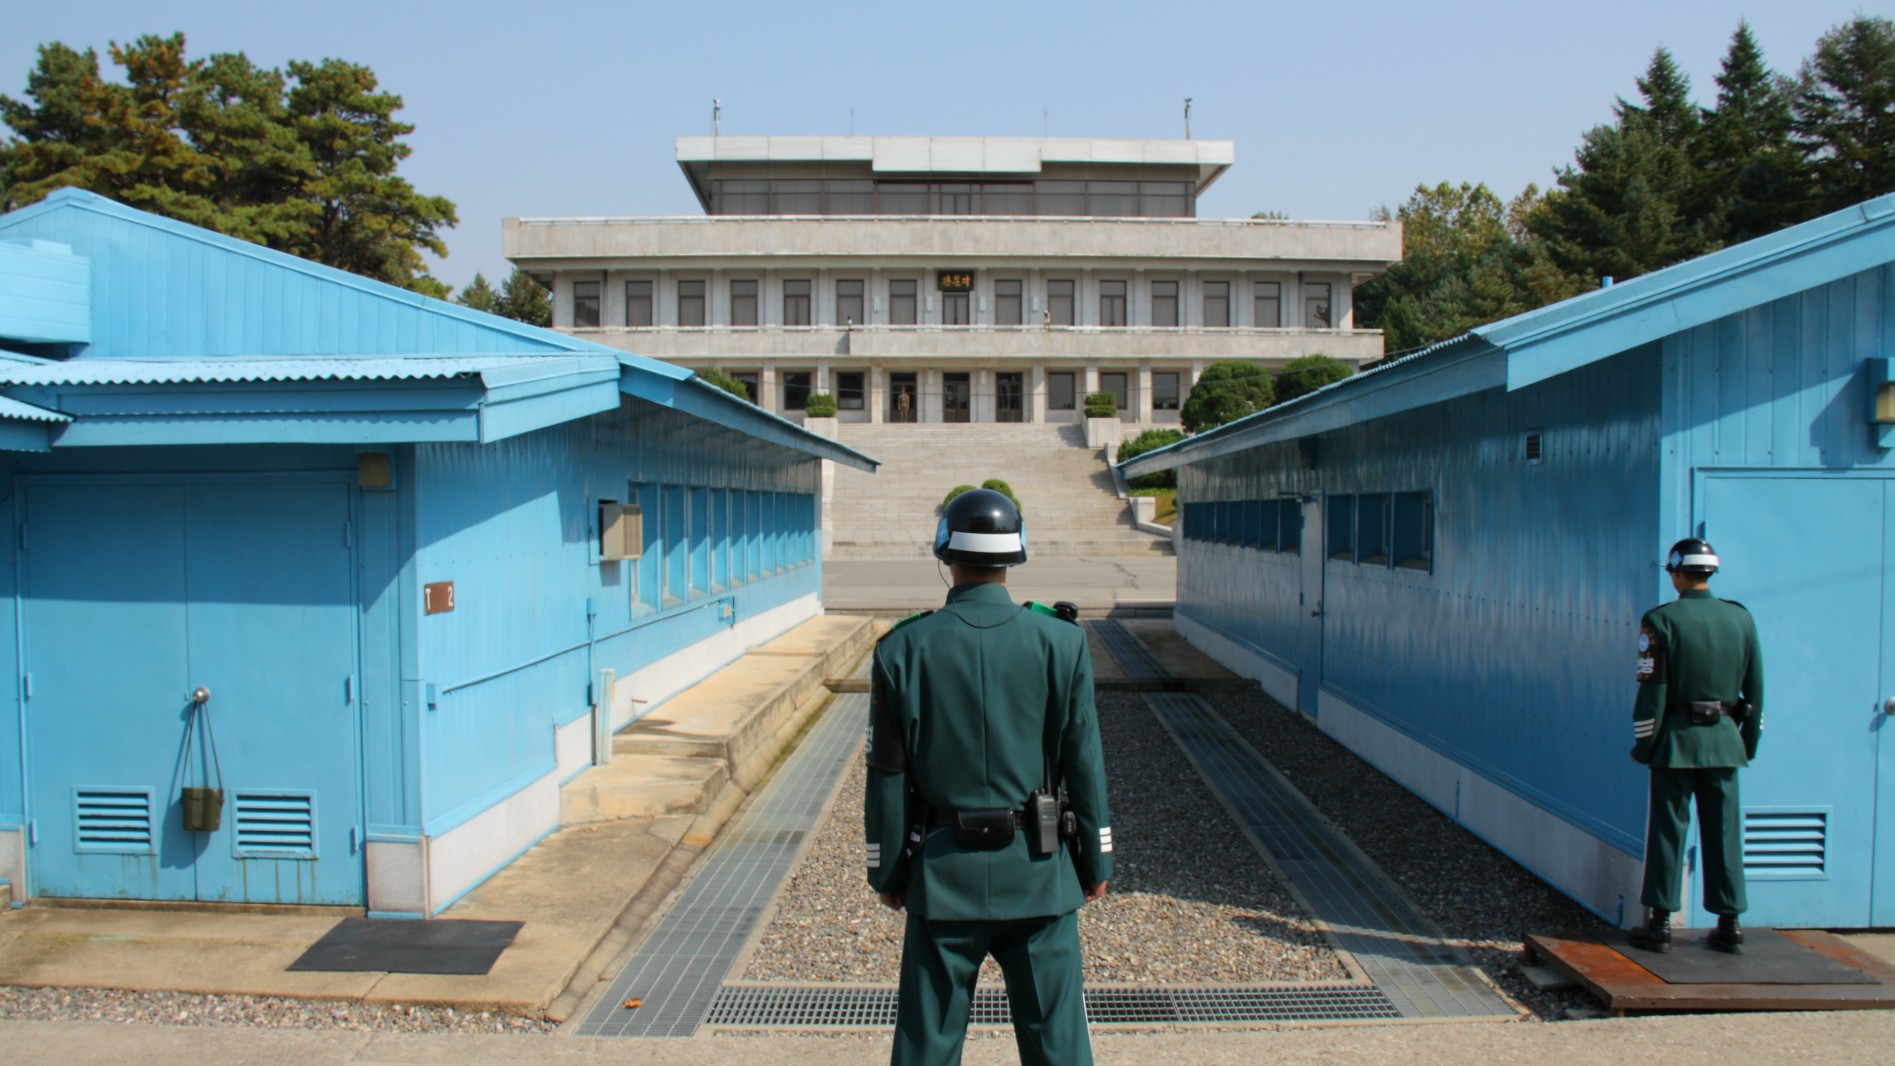 La rencontre eu lieu  à Panmunjeom, à la frontière des deux Corées (Photo:fnfbangkok/Flickr/CC BY-NC 2.0)